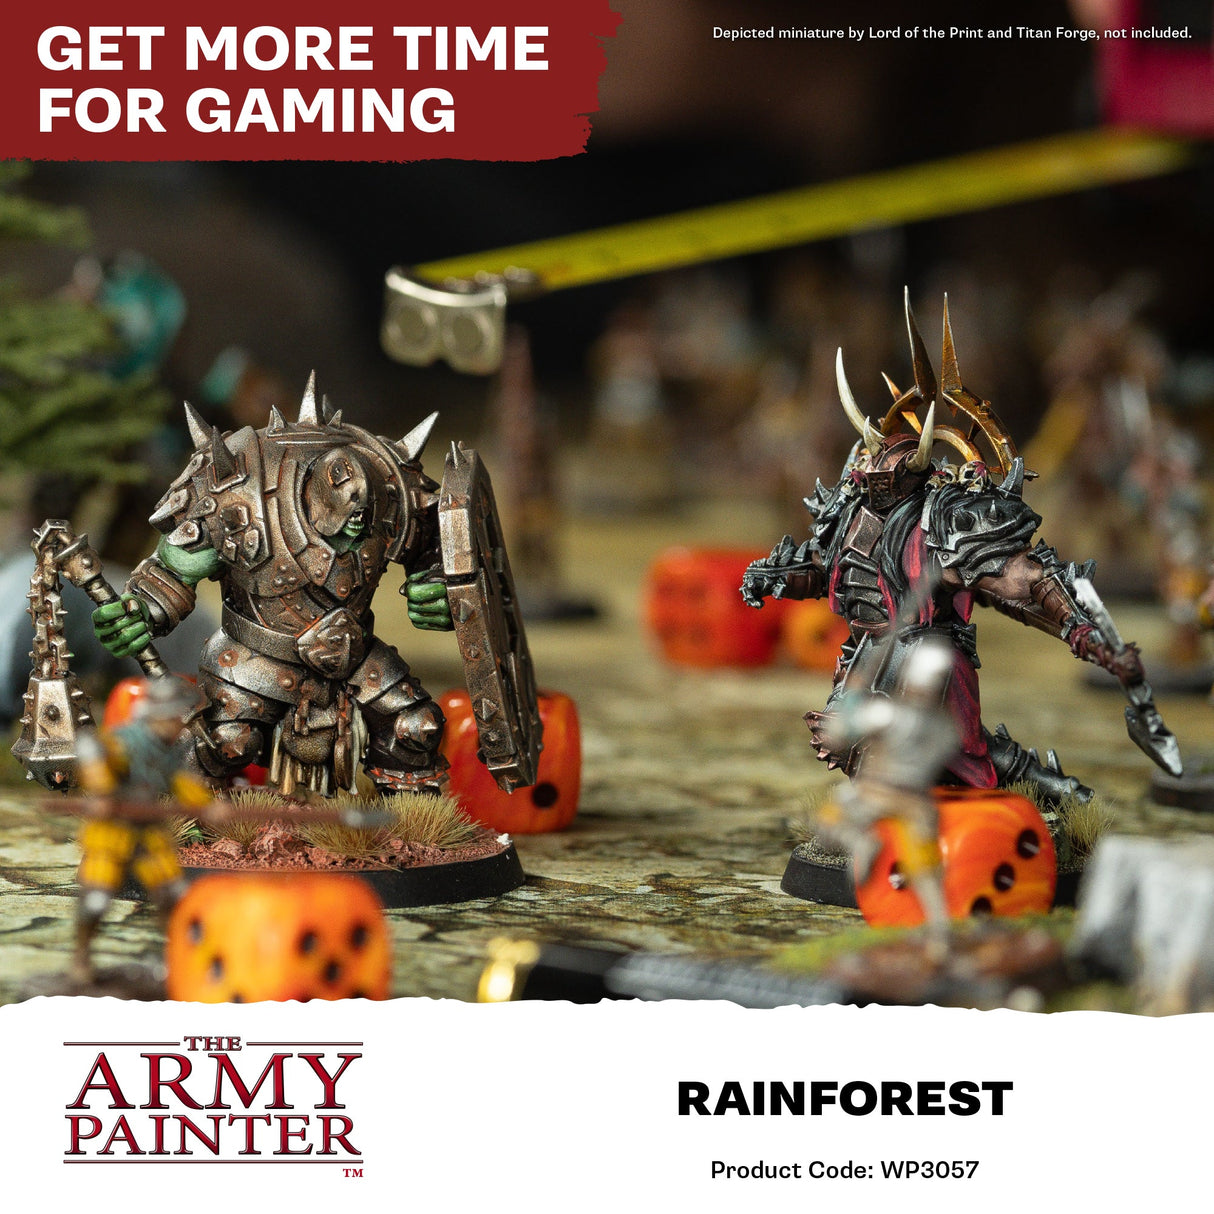 The Army Painter - Warpaints Fanatic: Rainforest